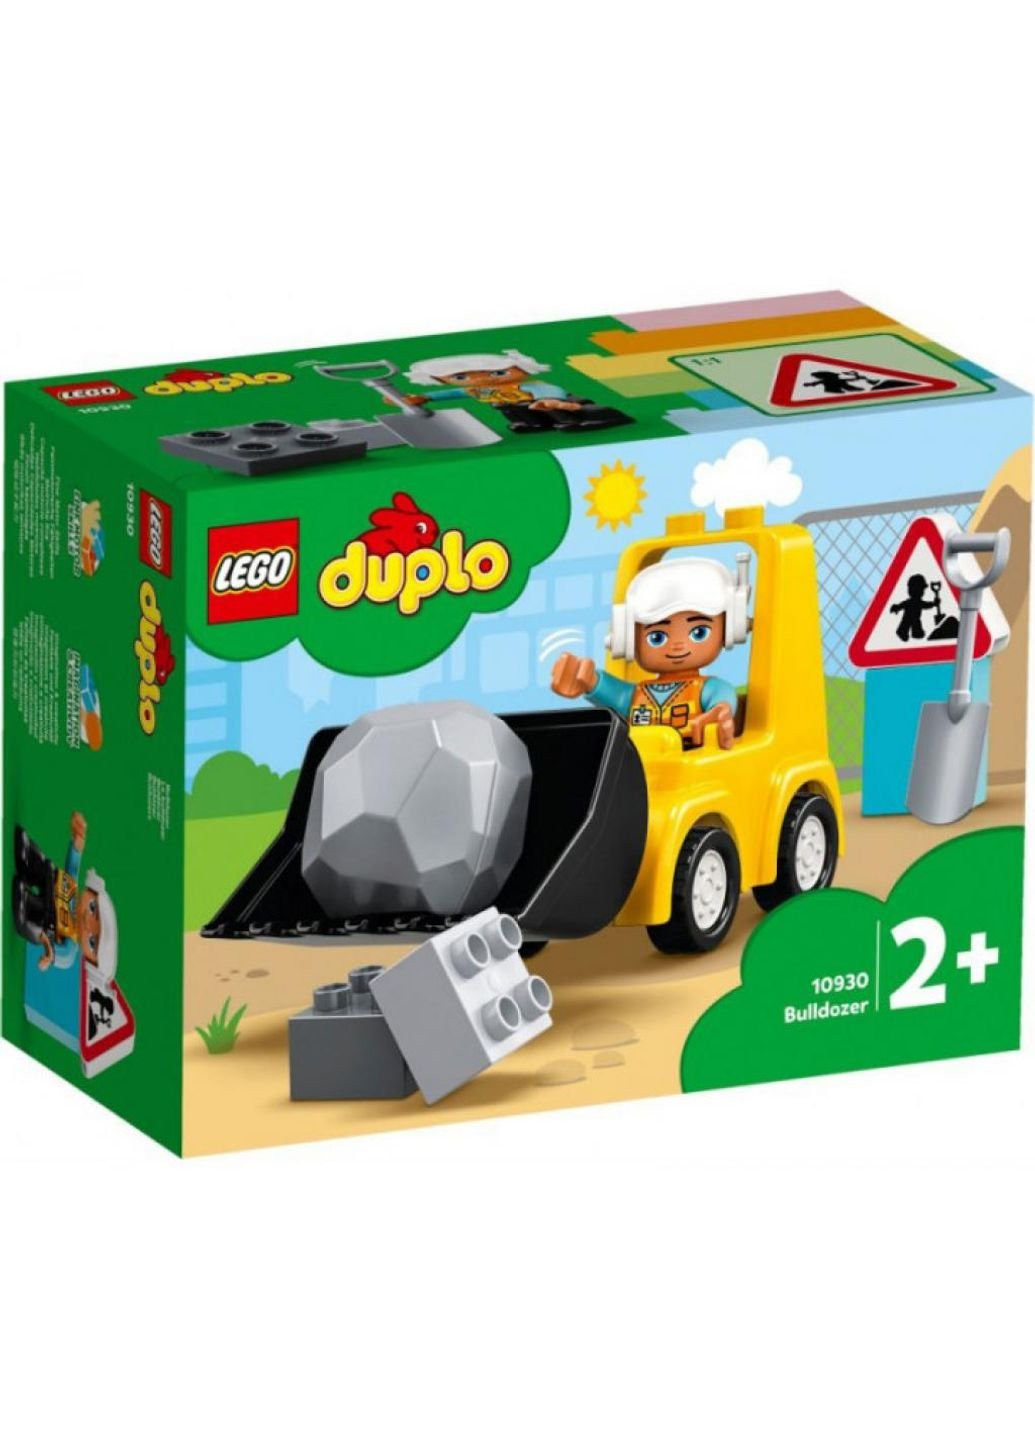 Конструктор Duplo Town Бульдозер 10 деталей (10930) Lego (251222927)